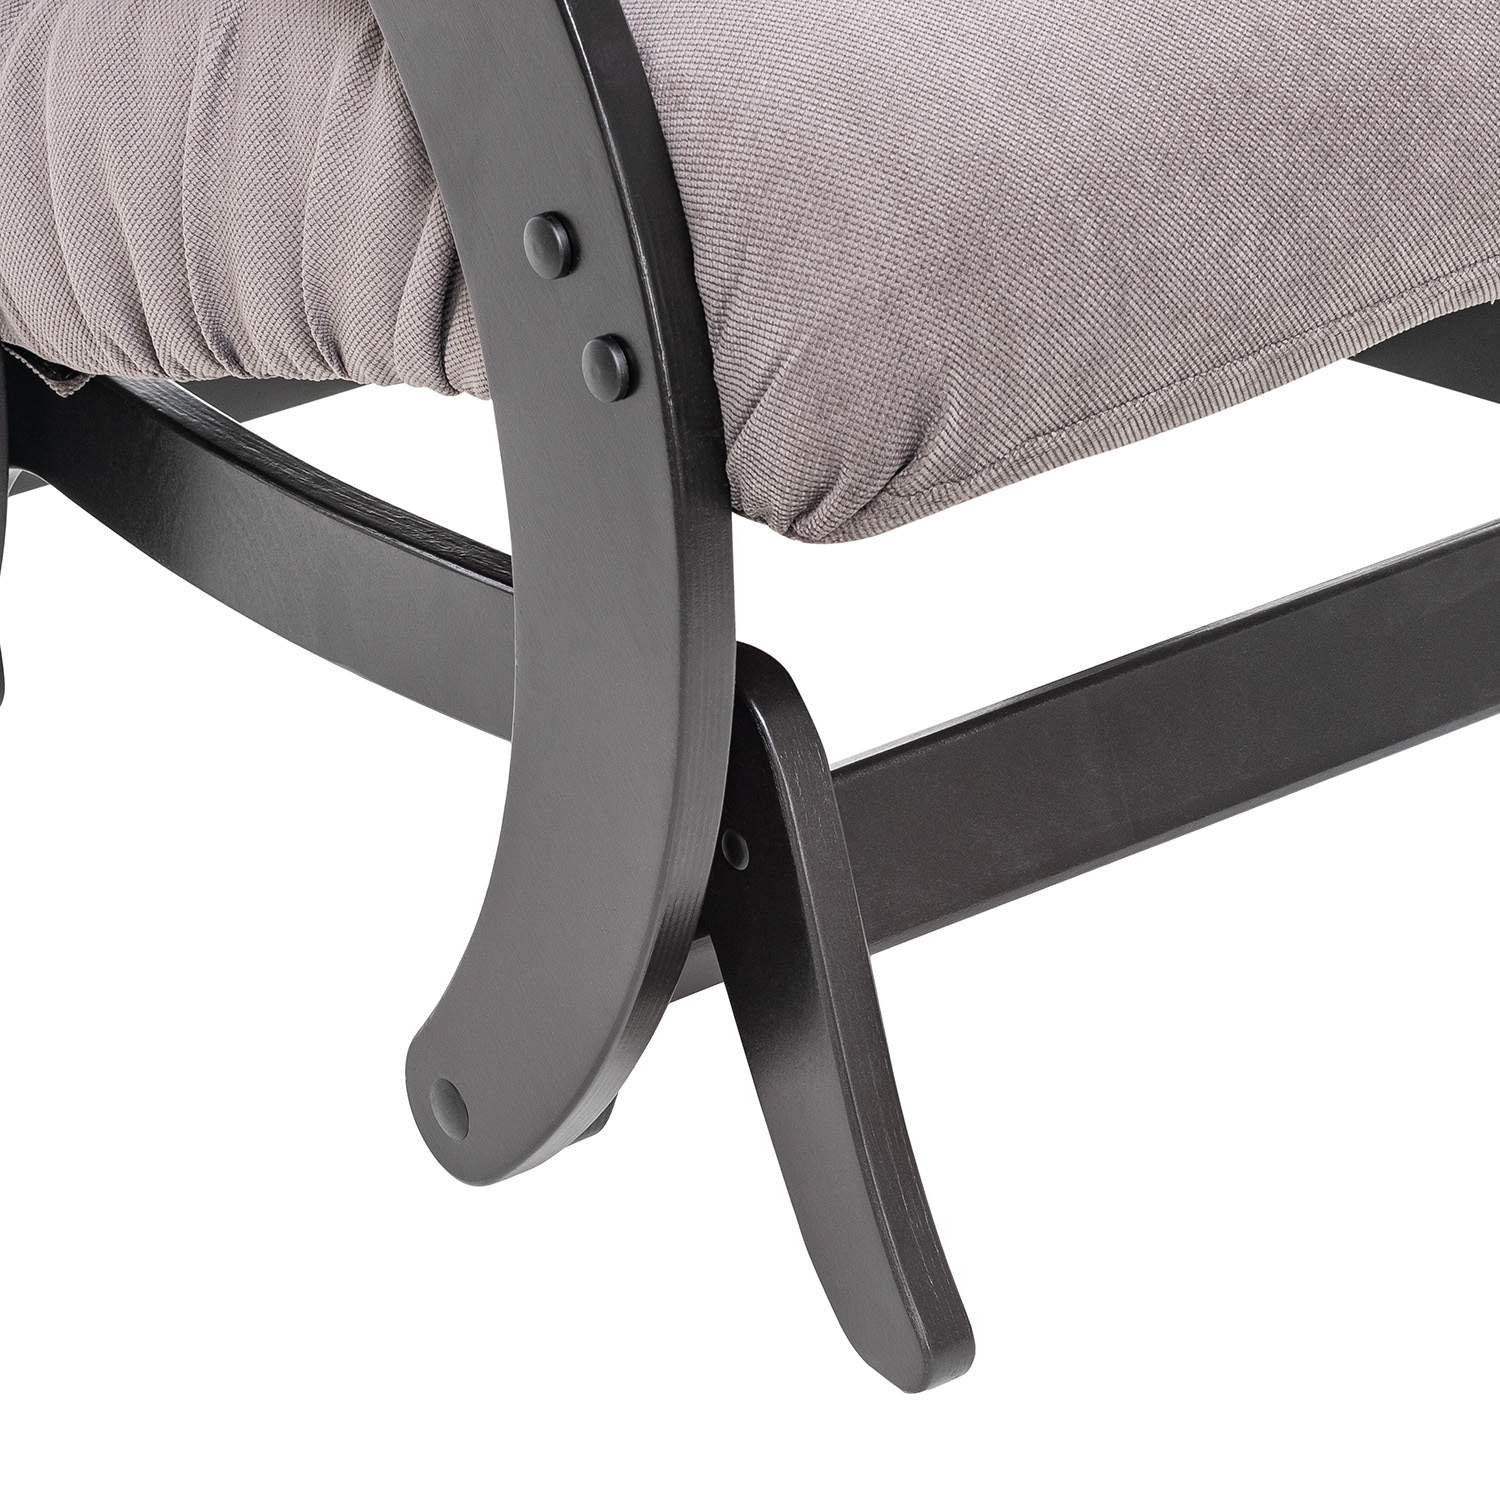 Кресло-глайдер Модель 68, венге, ткань Verona Antrazite Grey